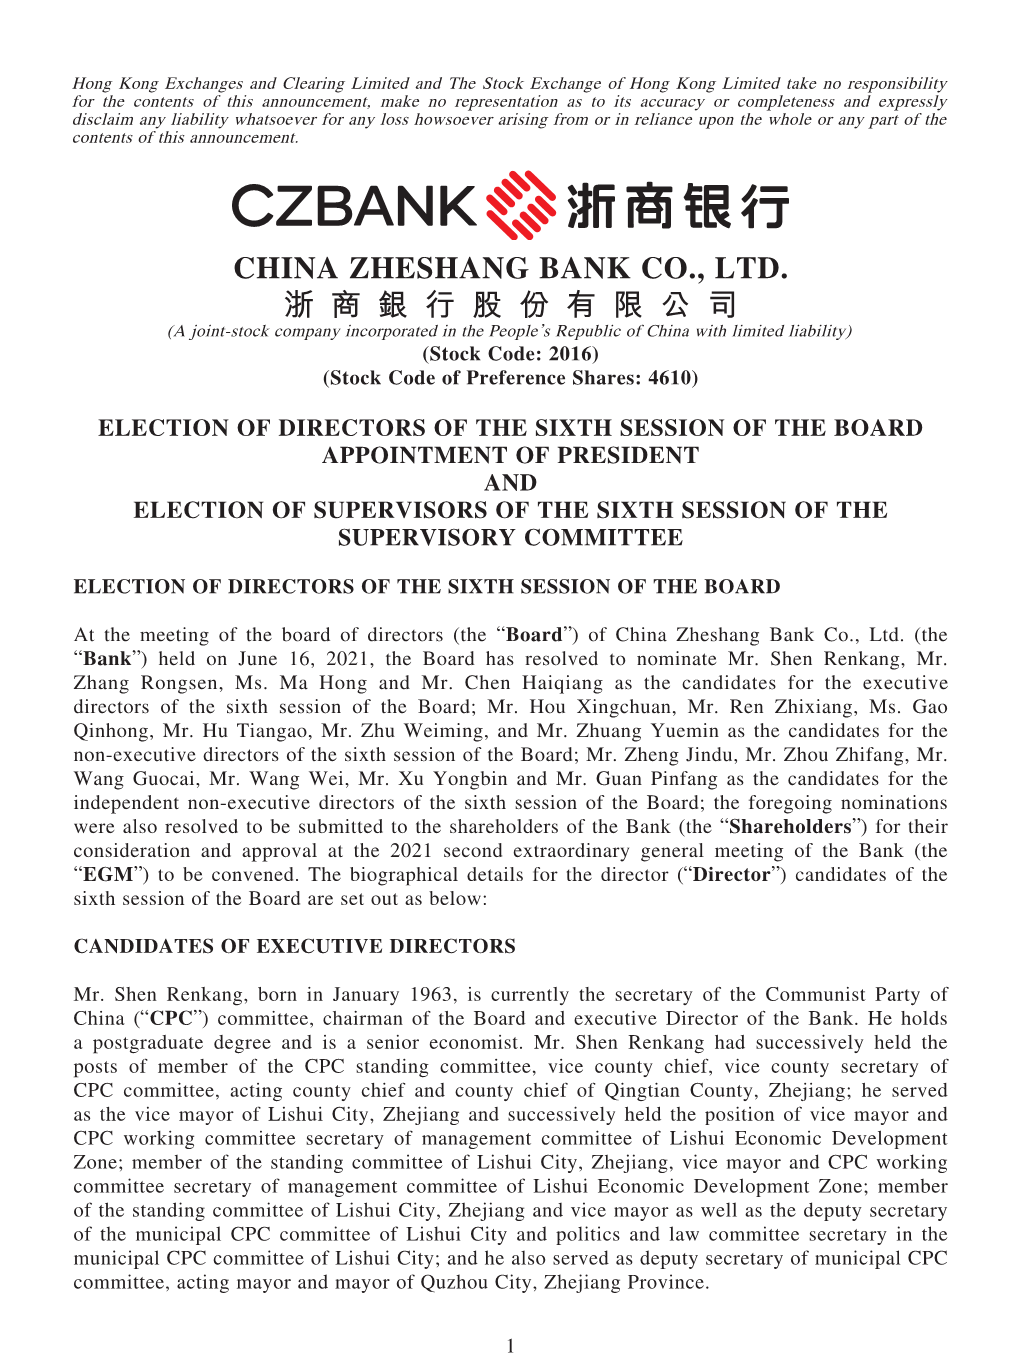 China Zheshang Bank Co., Ltd. 浙 商 銀 行 股 份 有